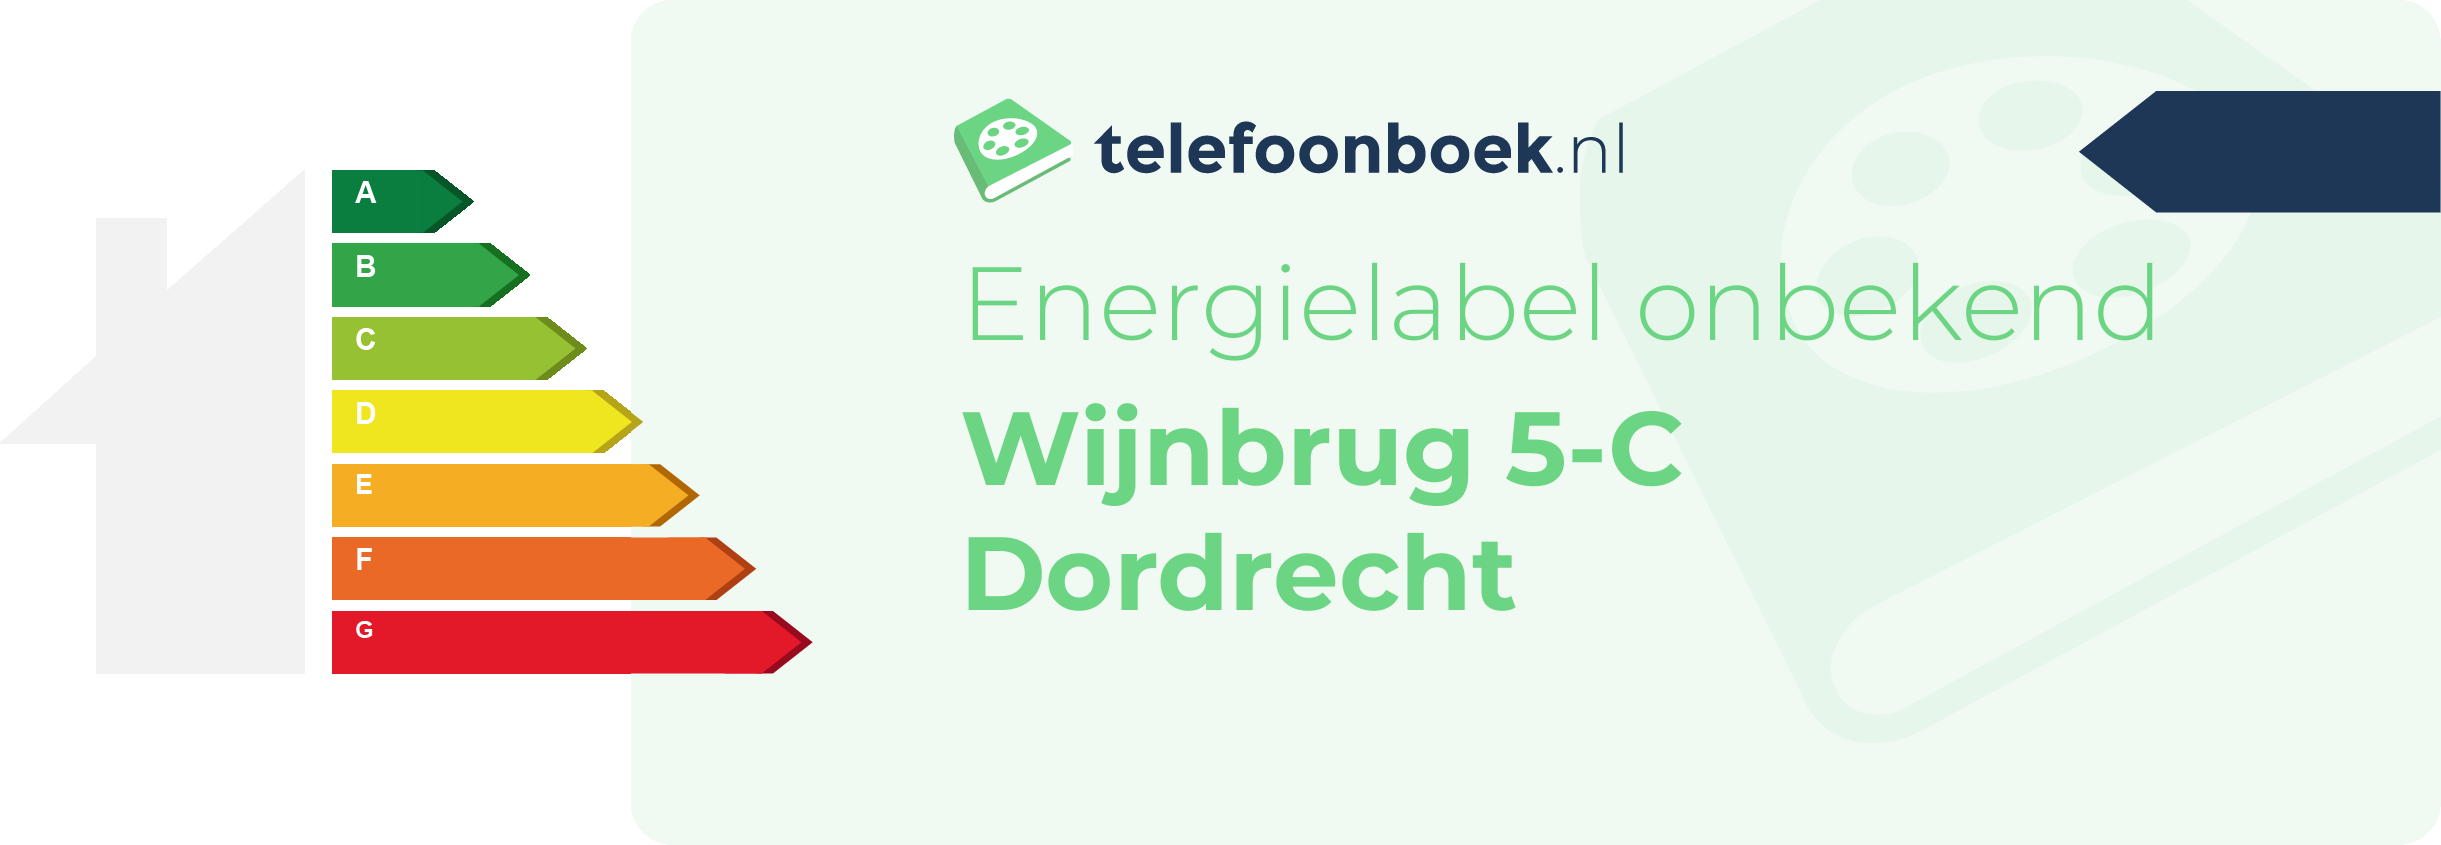 Energielabel Wijnbrug 5-C Dordrecht